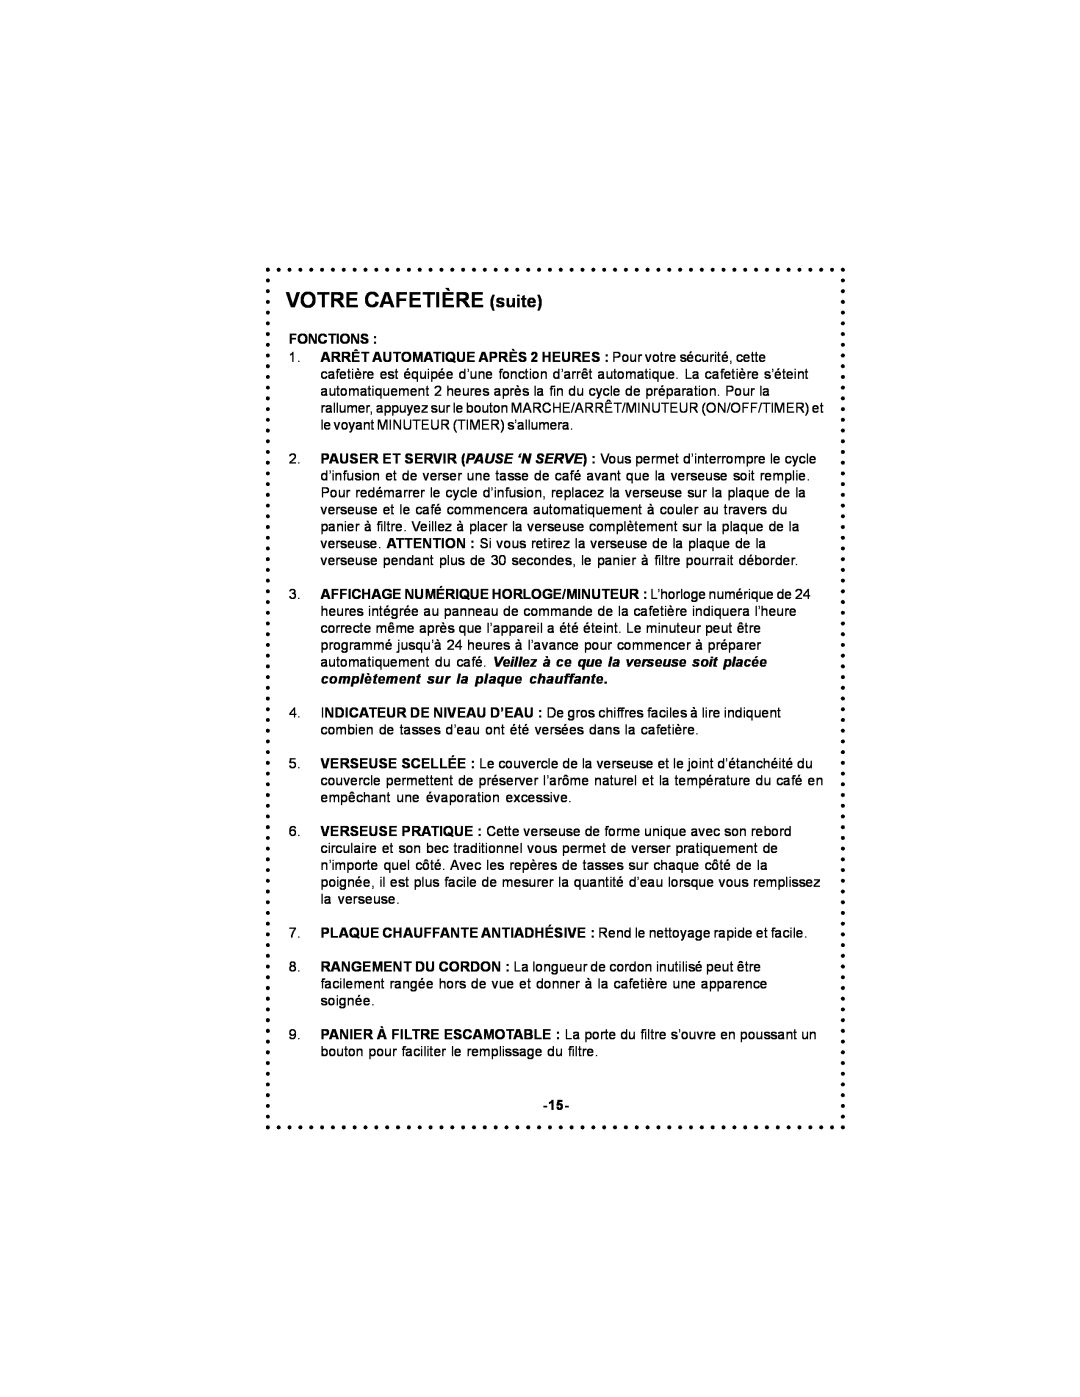 DeLonghi DC59TW instruction manual VOTRE CAFETIÈRE suite, Fonctions 